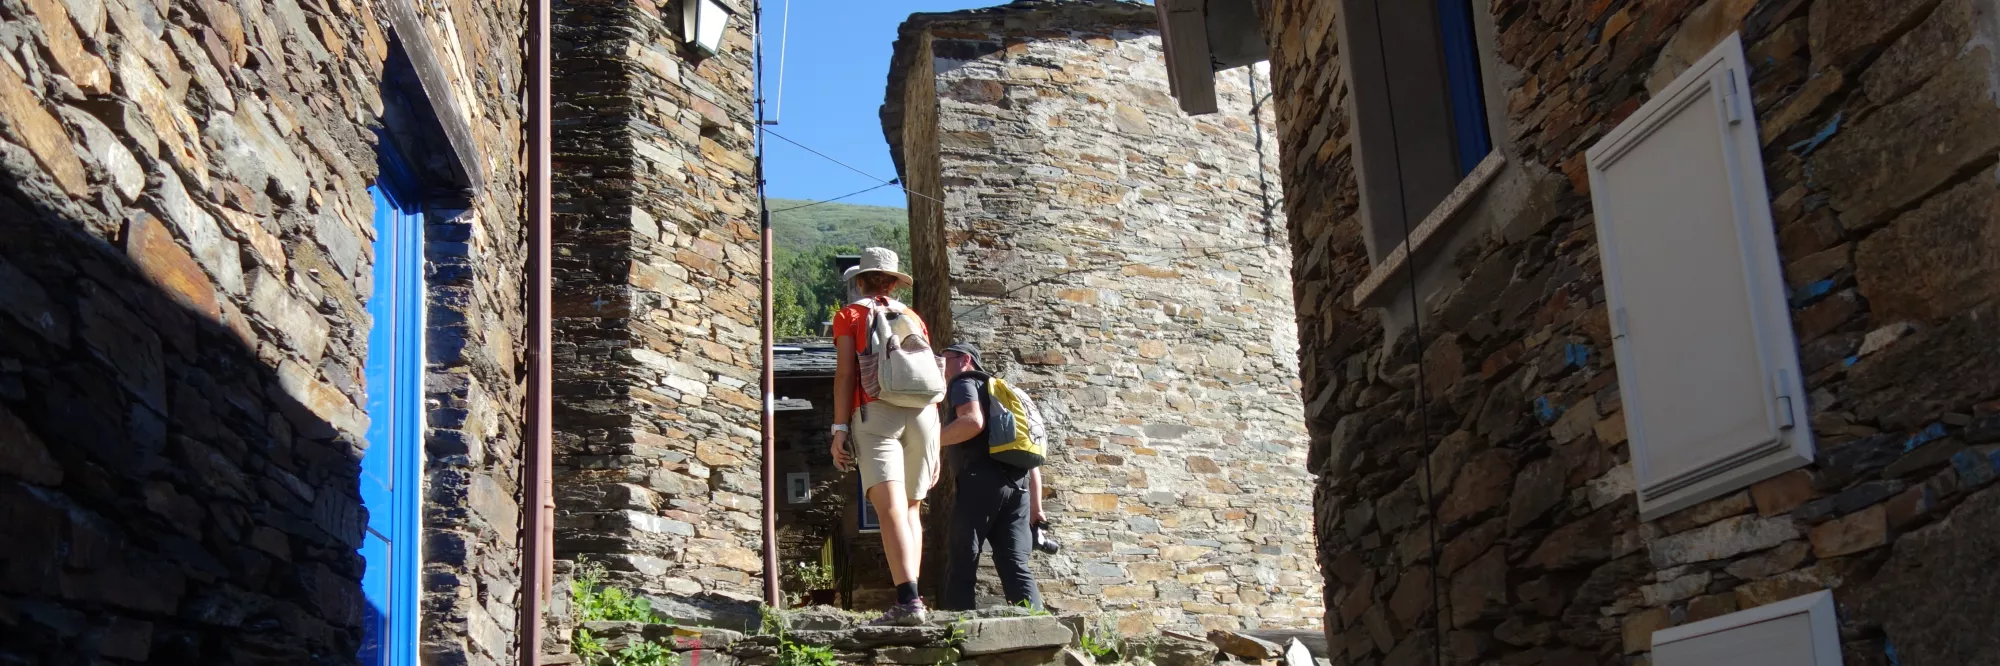 Twee wandelaars in een Portugees leisteendorpje